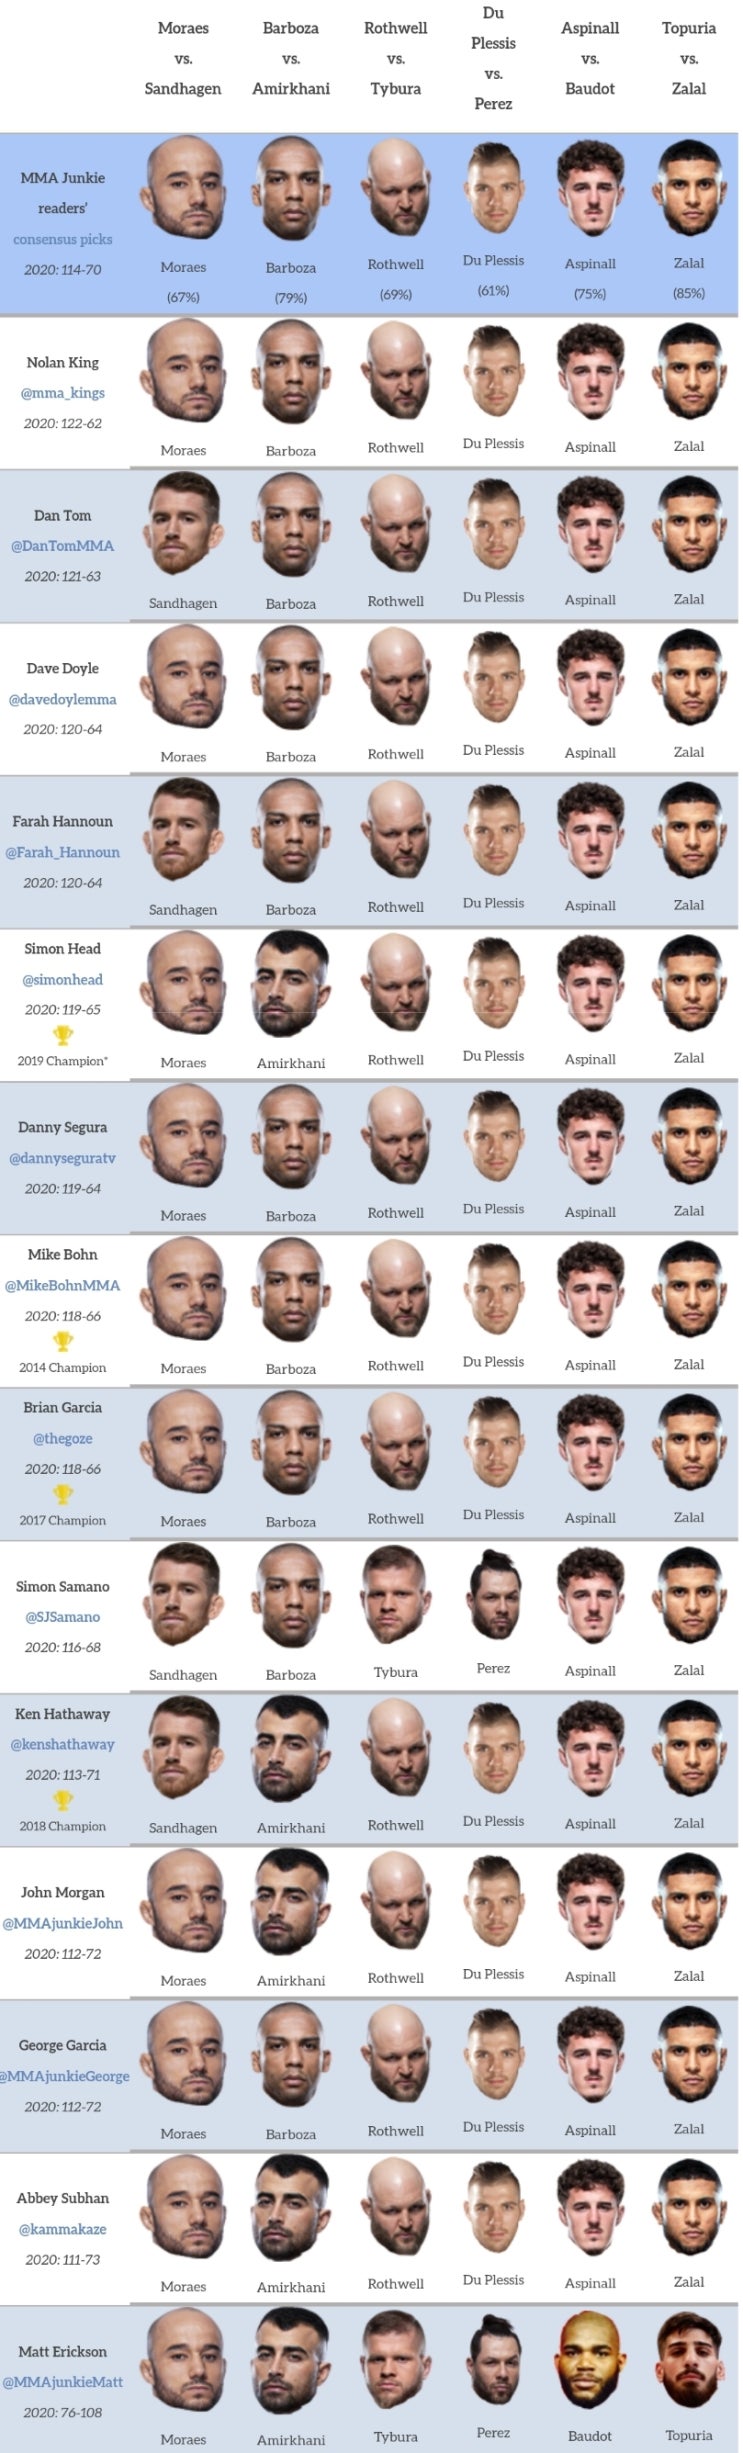 UFC 파이트 아일랜드 5: 모라에스 vs 샌드하겐 프리뷰(배당률, 미디어 예상)